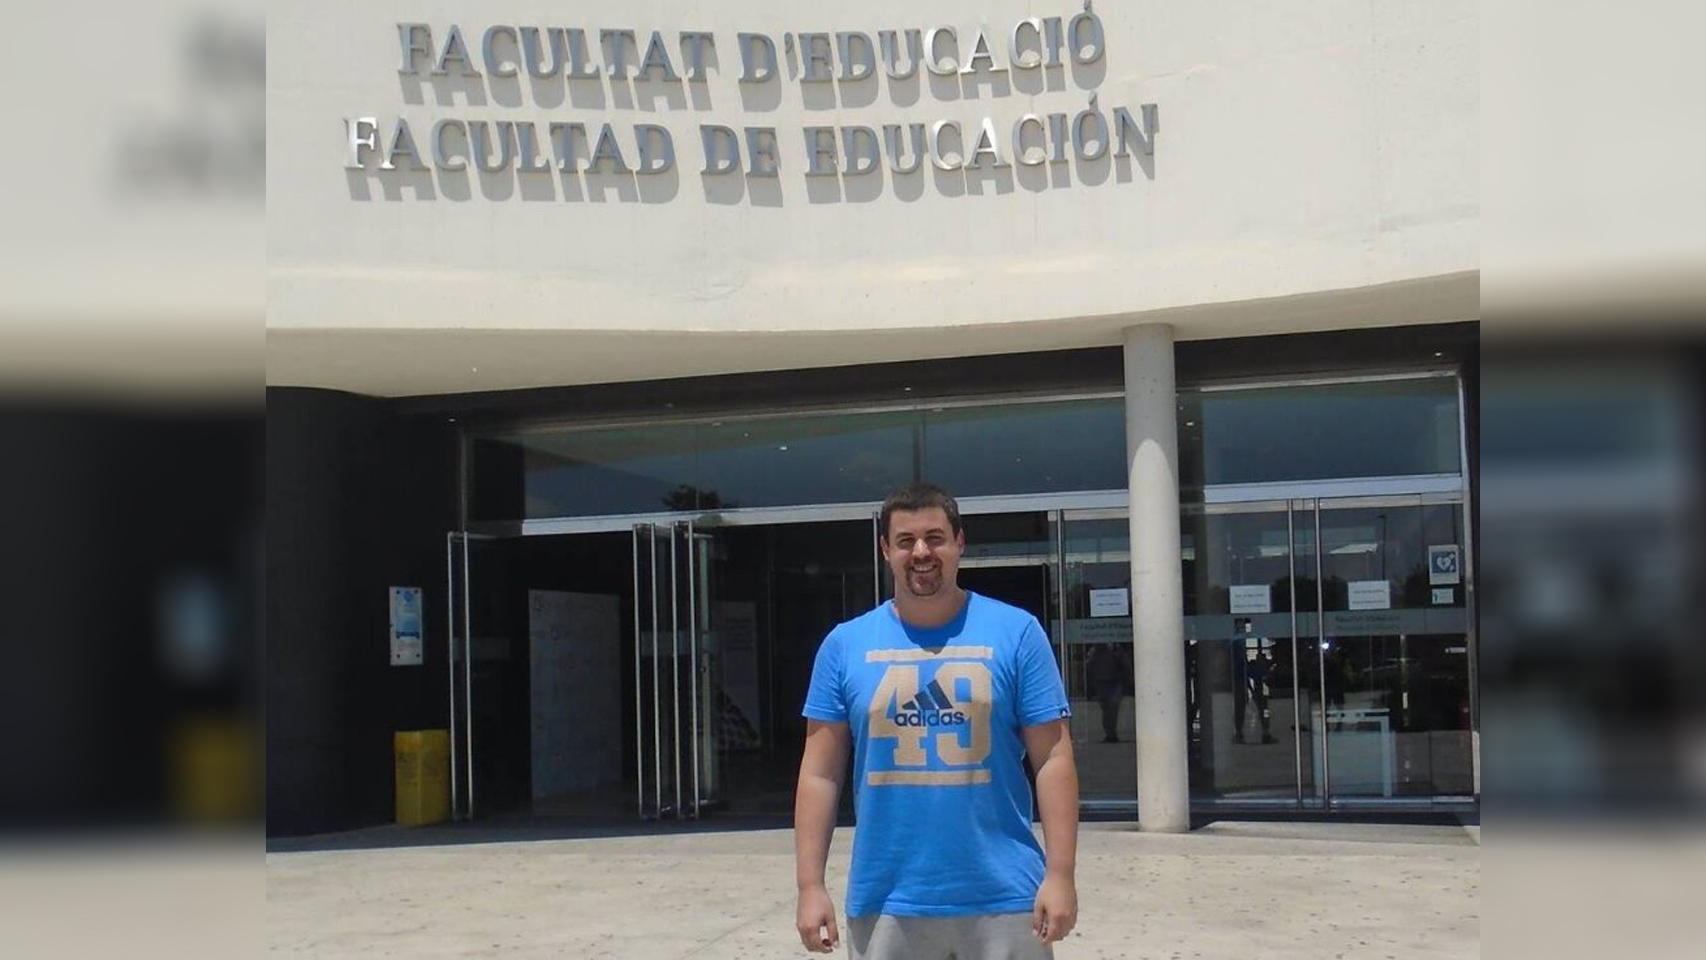 El fallecido Miguel Ángel en la entrada de la Facultad de Educación, en Alicante.